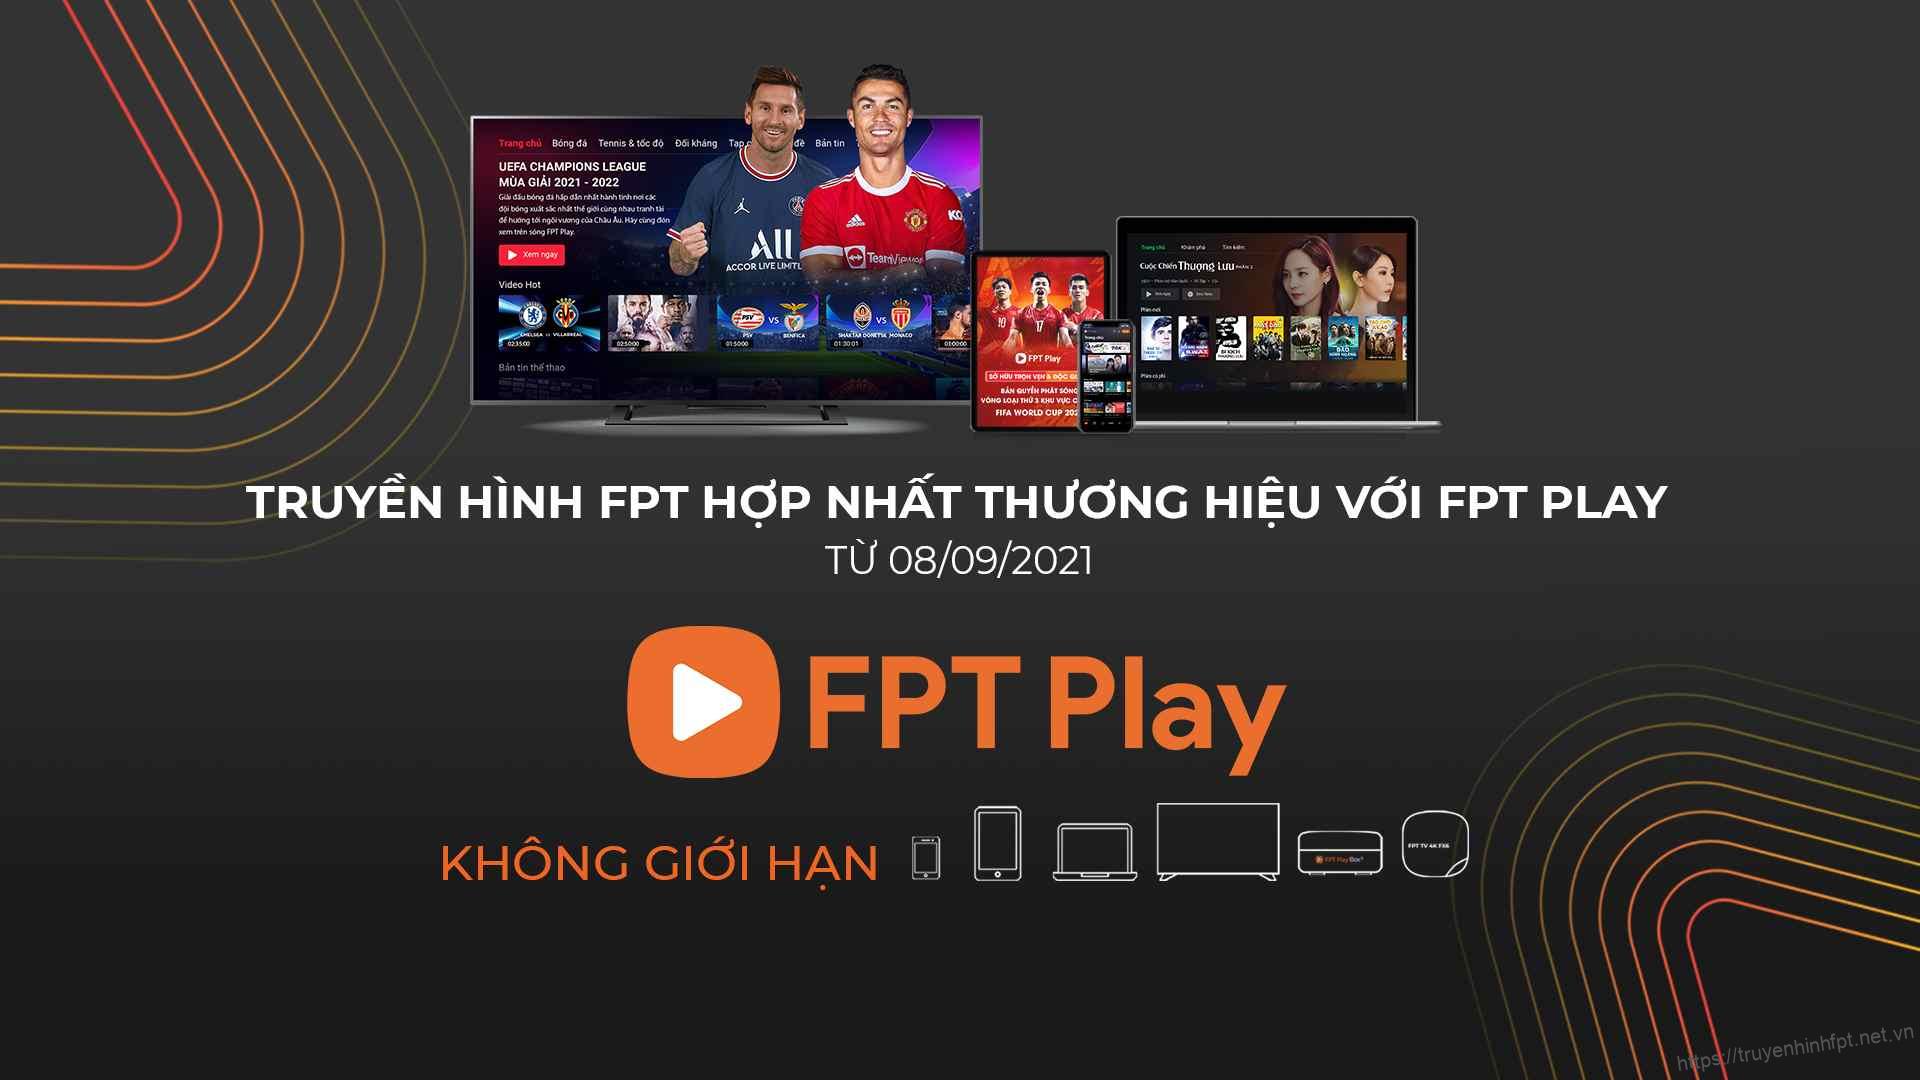 Tài khoản FPT miễn phí lấy từ tài khoản khách hàng đang dùng truyền hình FPT